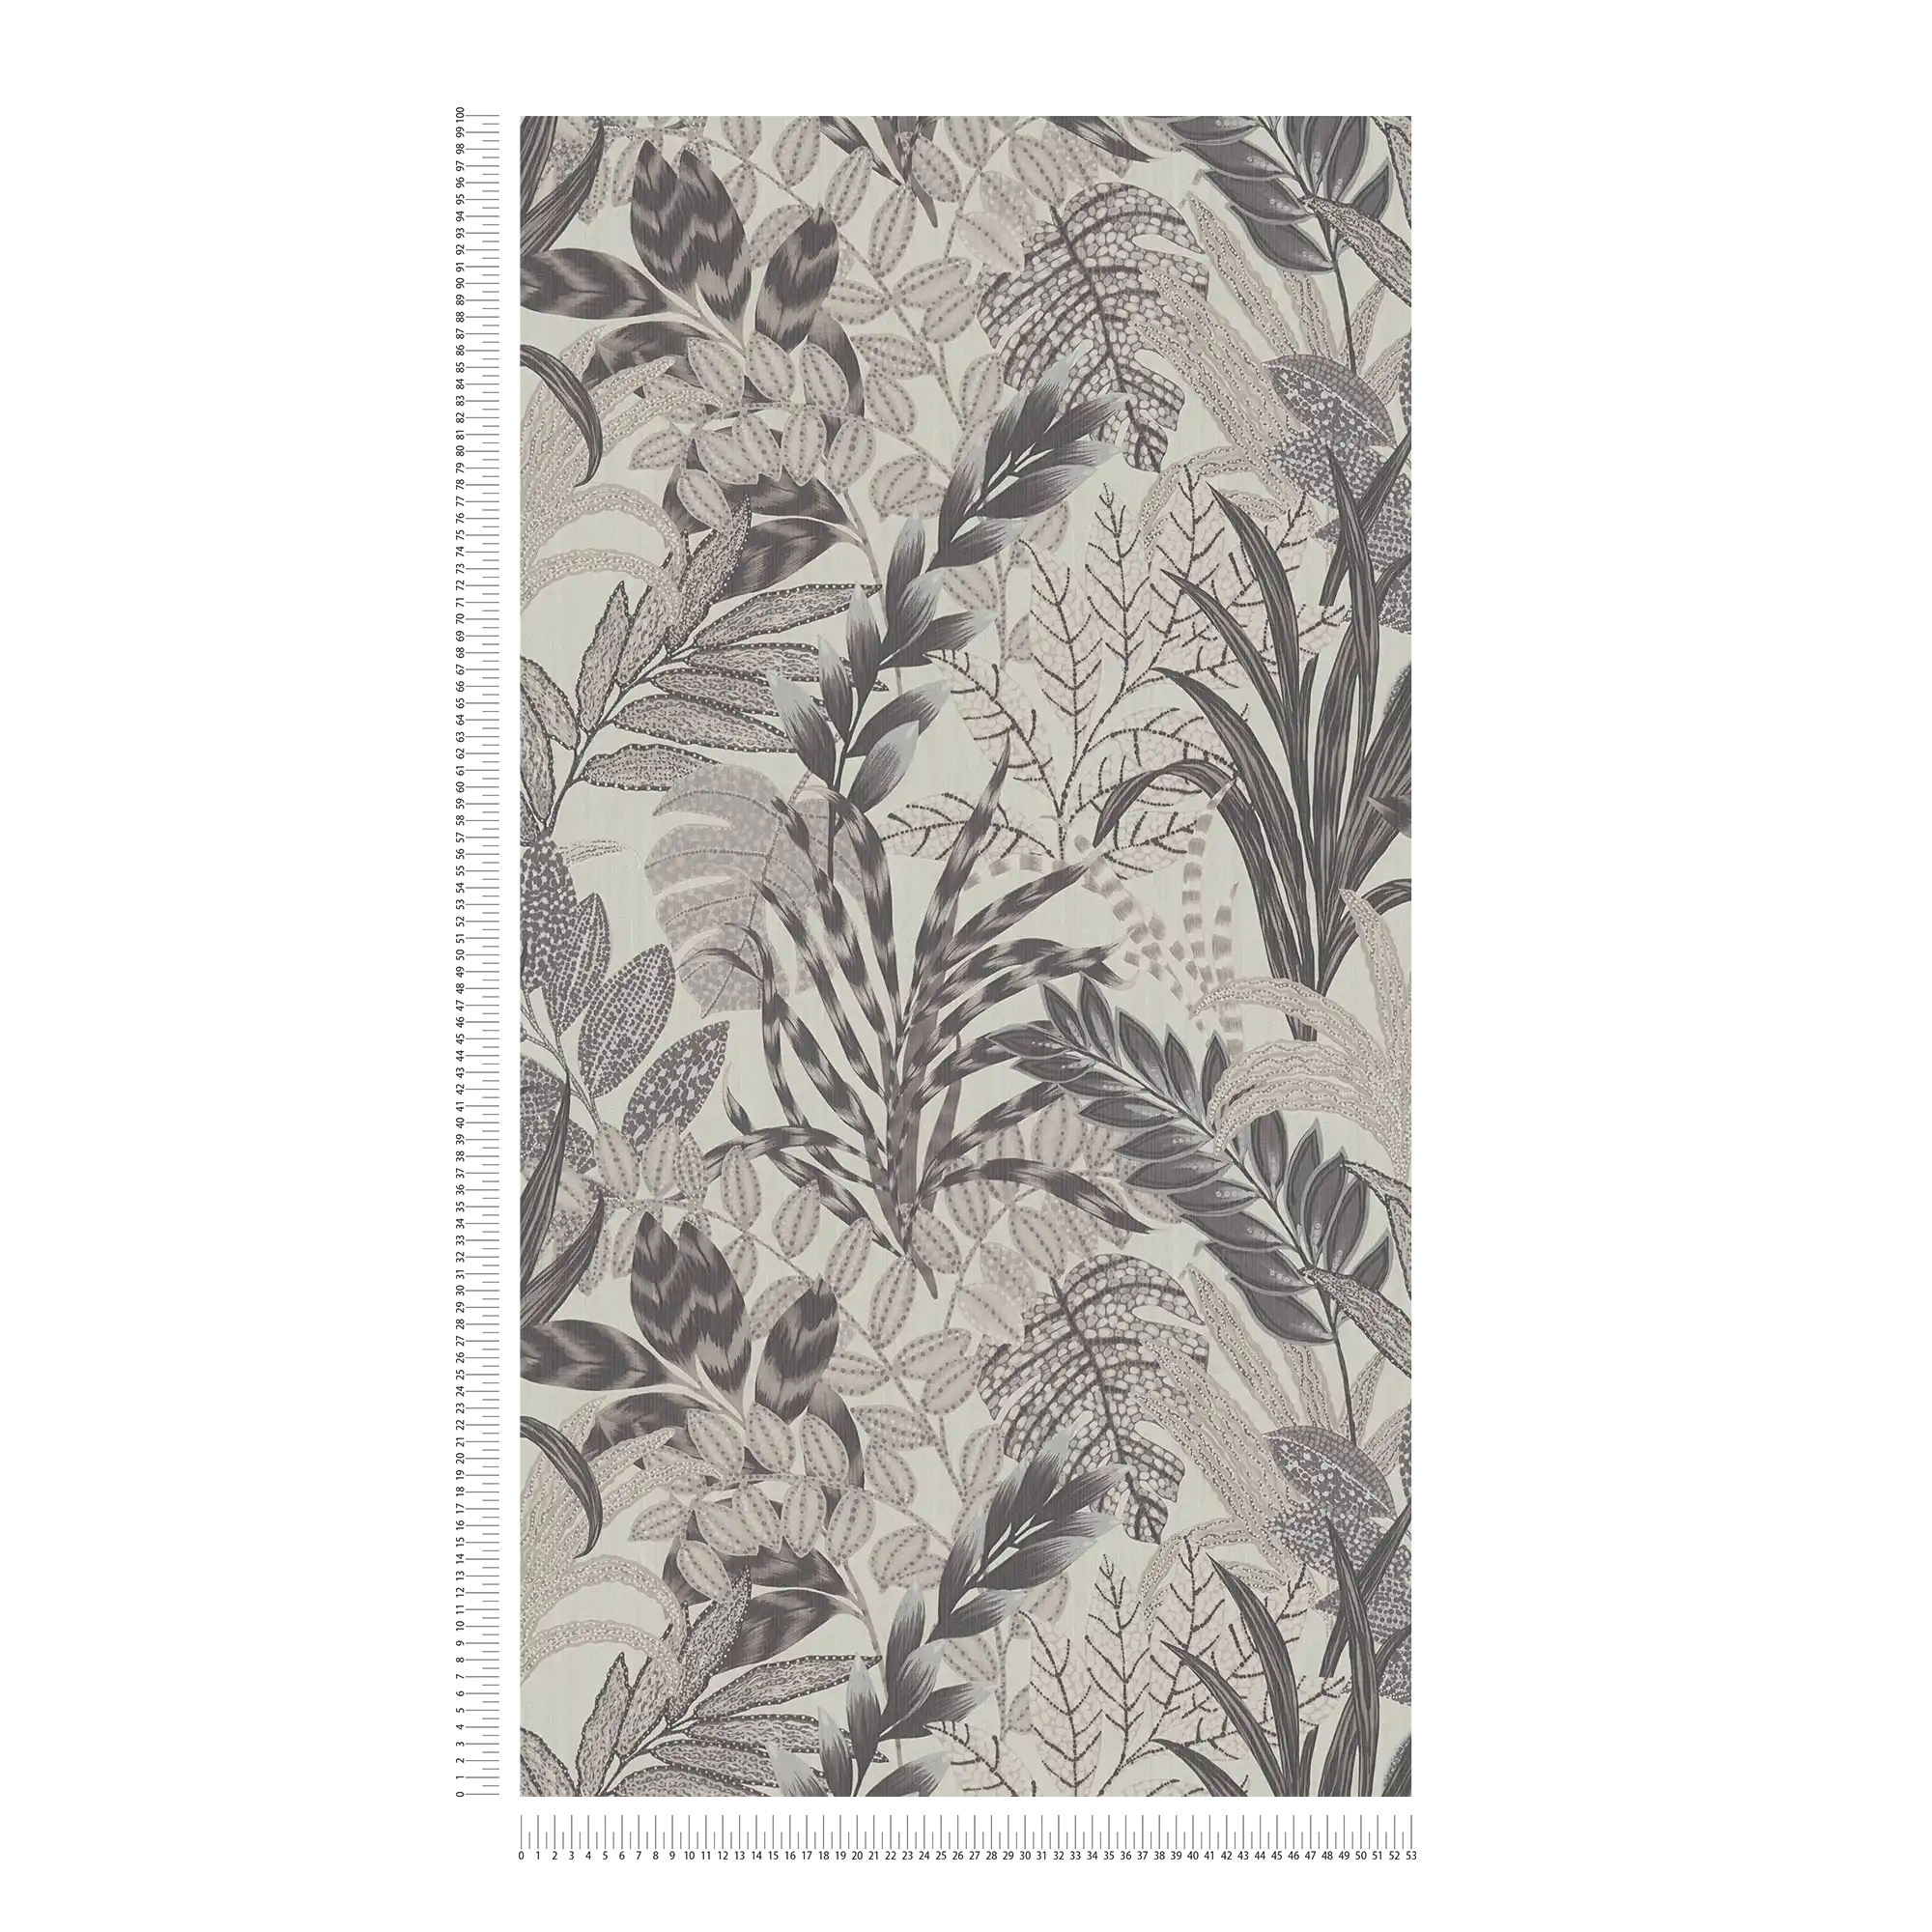             Monochrome Dschungel Tapete mit Prägestruktur – Grau, Weiß
        